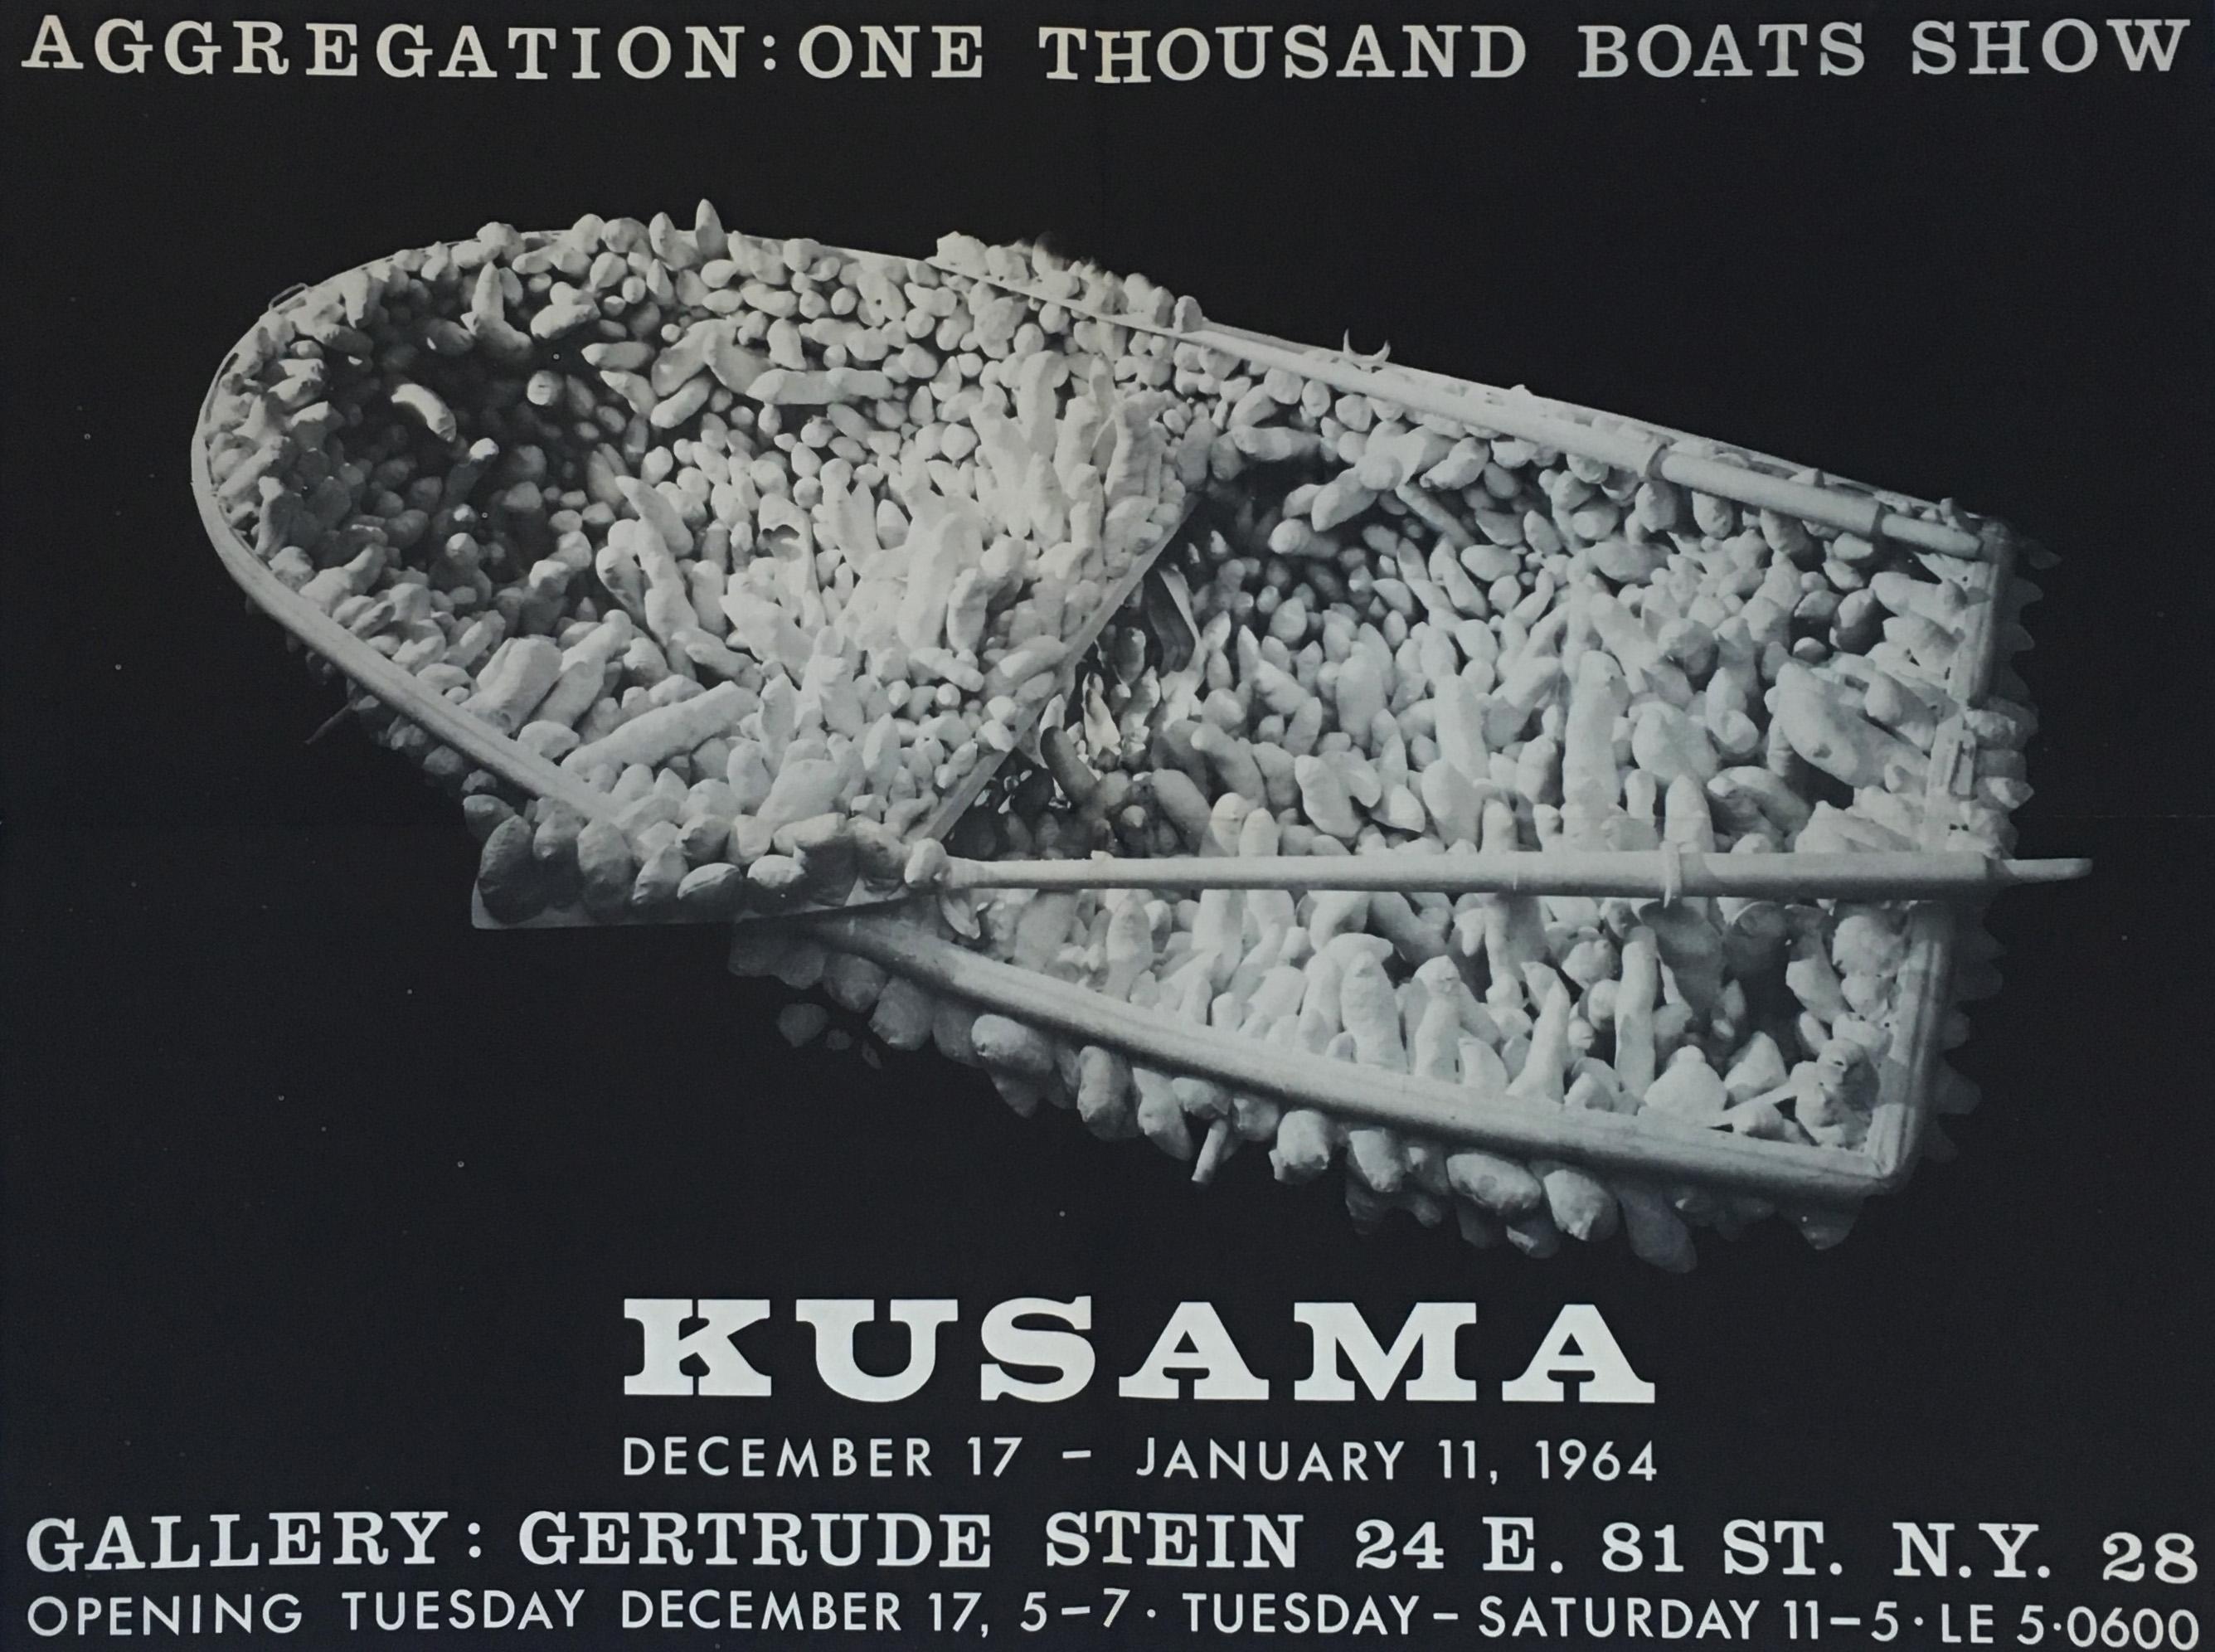 Kusama 1960s One Thousand Boats Show poster (Kusama Aggregation) - Art by Yayoi Kusama